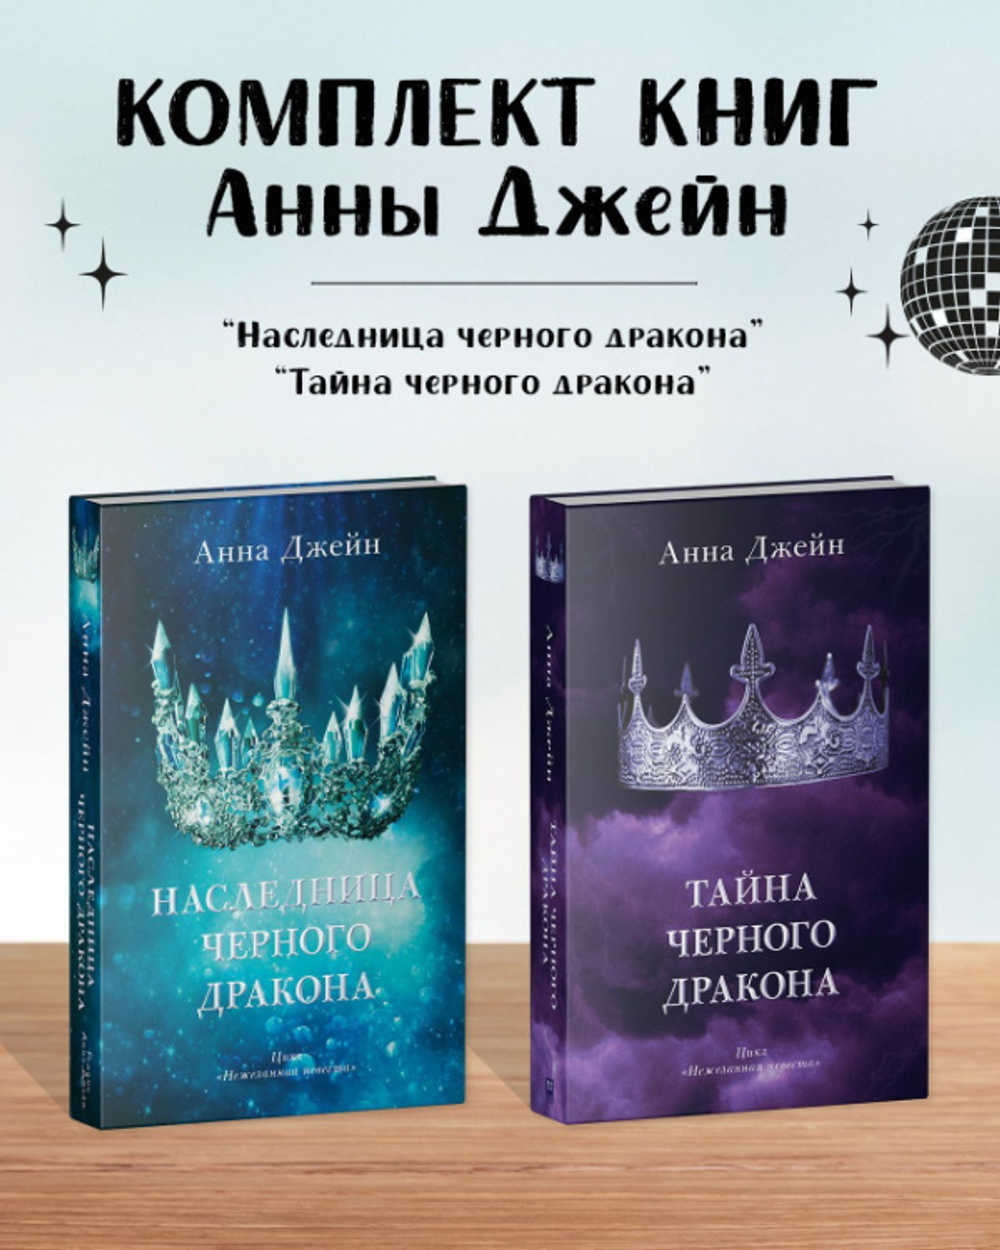 Комплект книг Анны Джейн «Наследница черного дракона», «Тайна черного дракона»